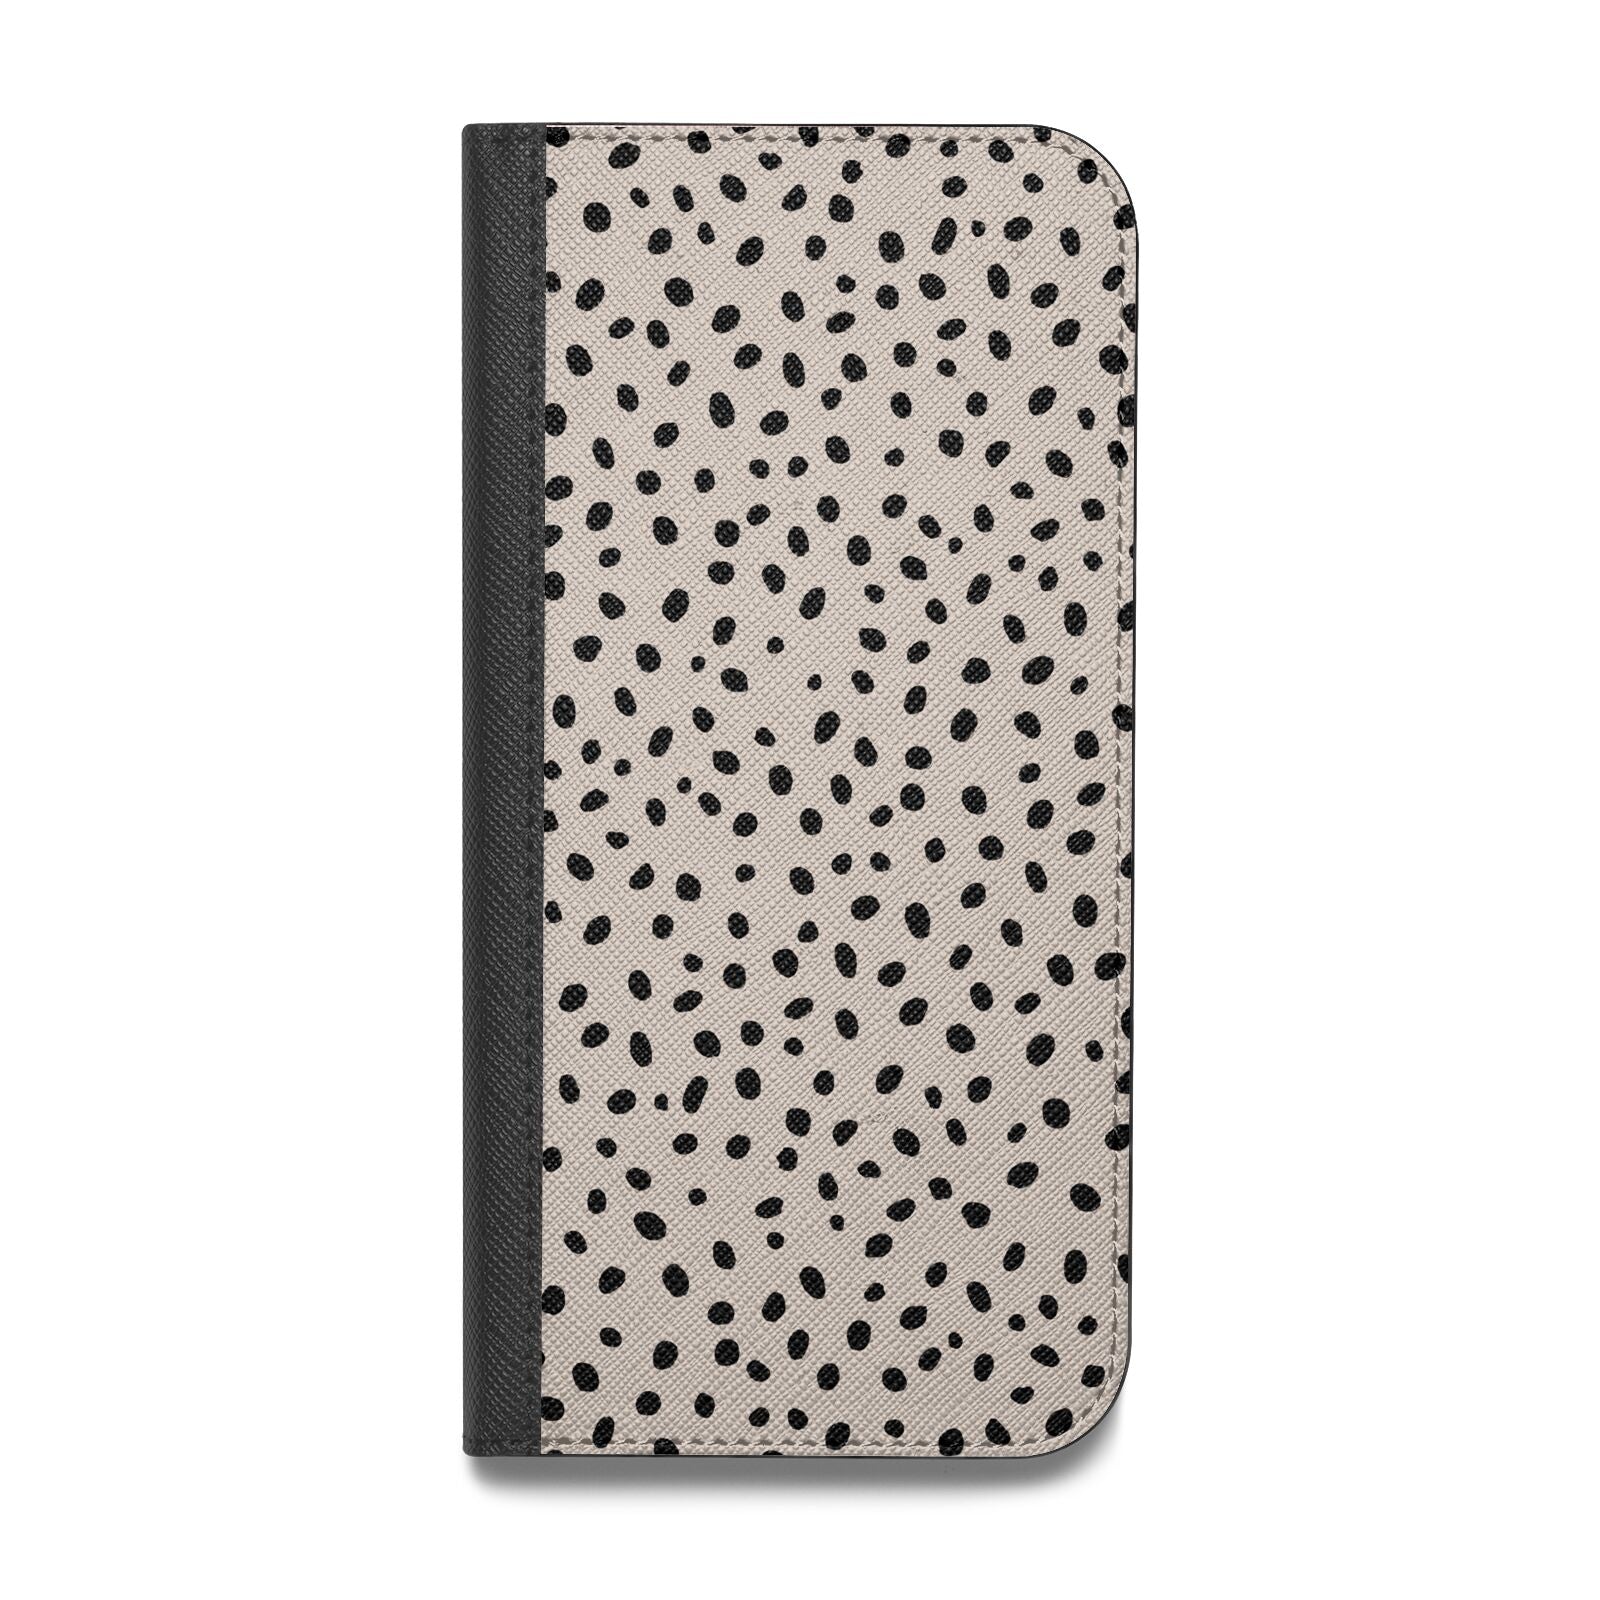 Almond Polka Dot Vegan Leather Flip iPhone Case